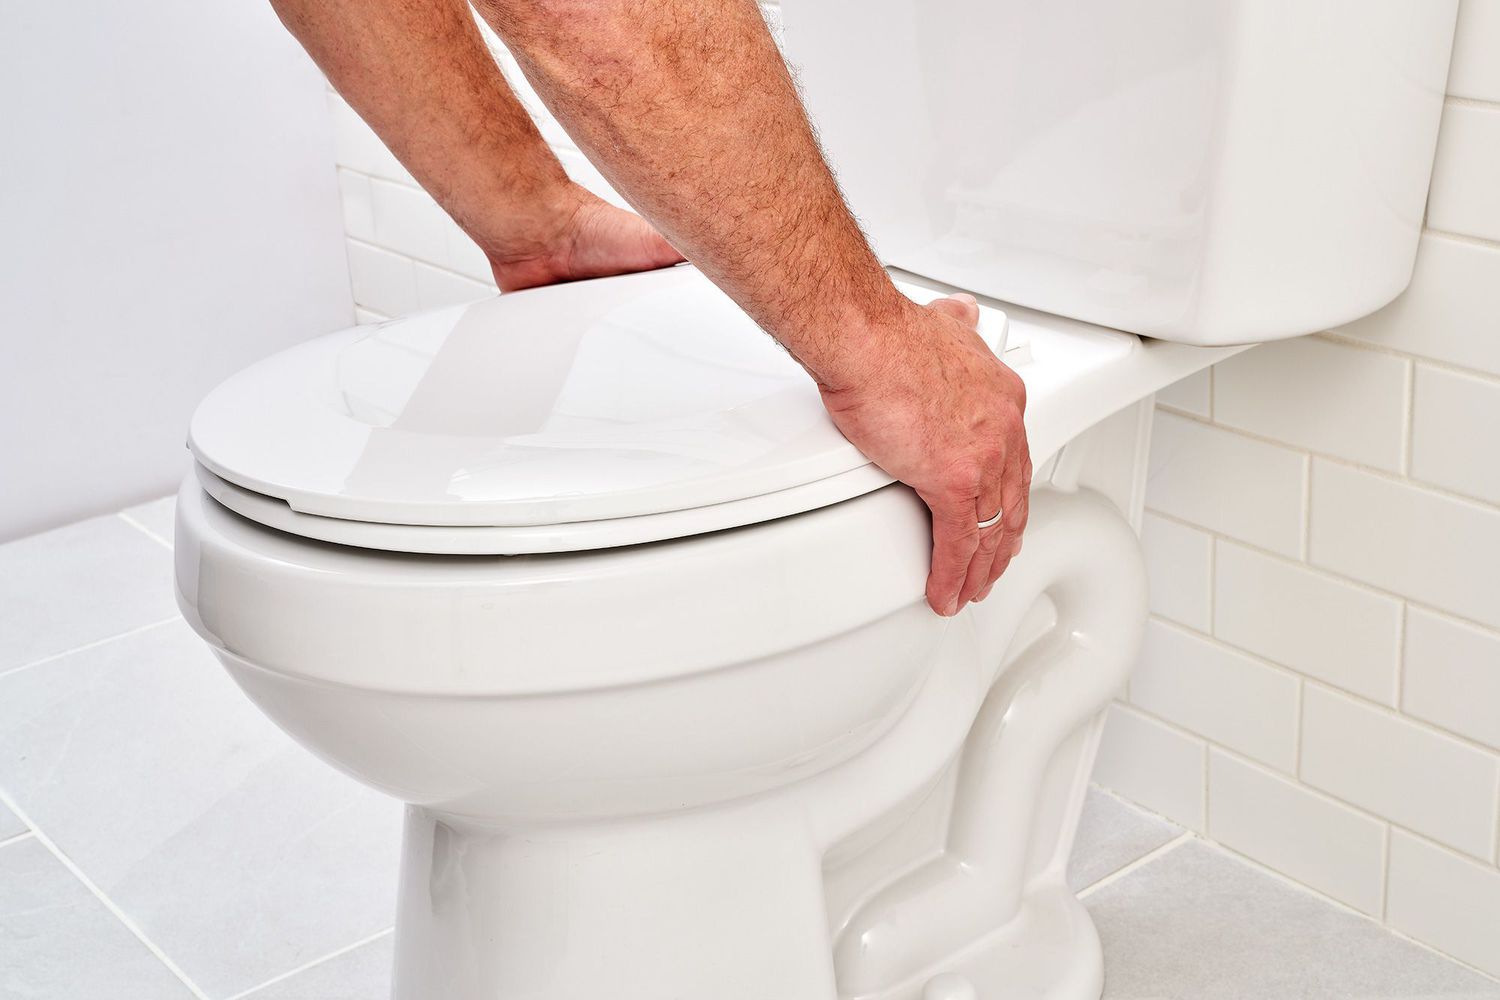 بهترین محل جهت نصب توالت فرنگی کجاست؟/نصب توالت فرنگی در حمام بهتر است یا سرویس بهداشتی